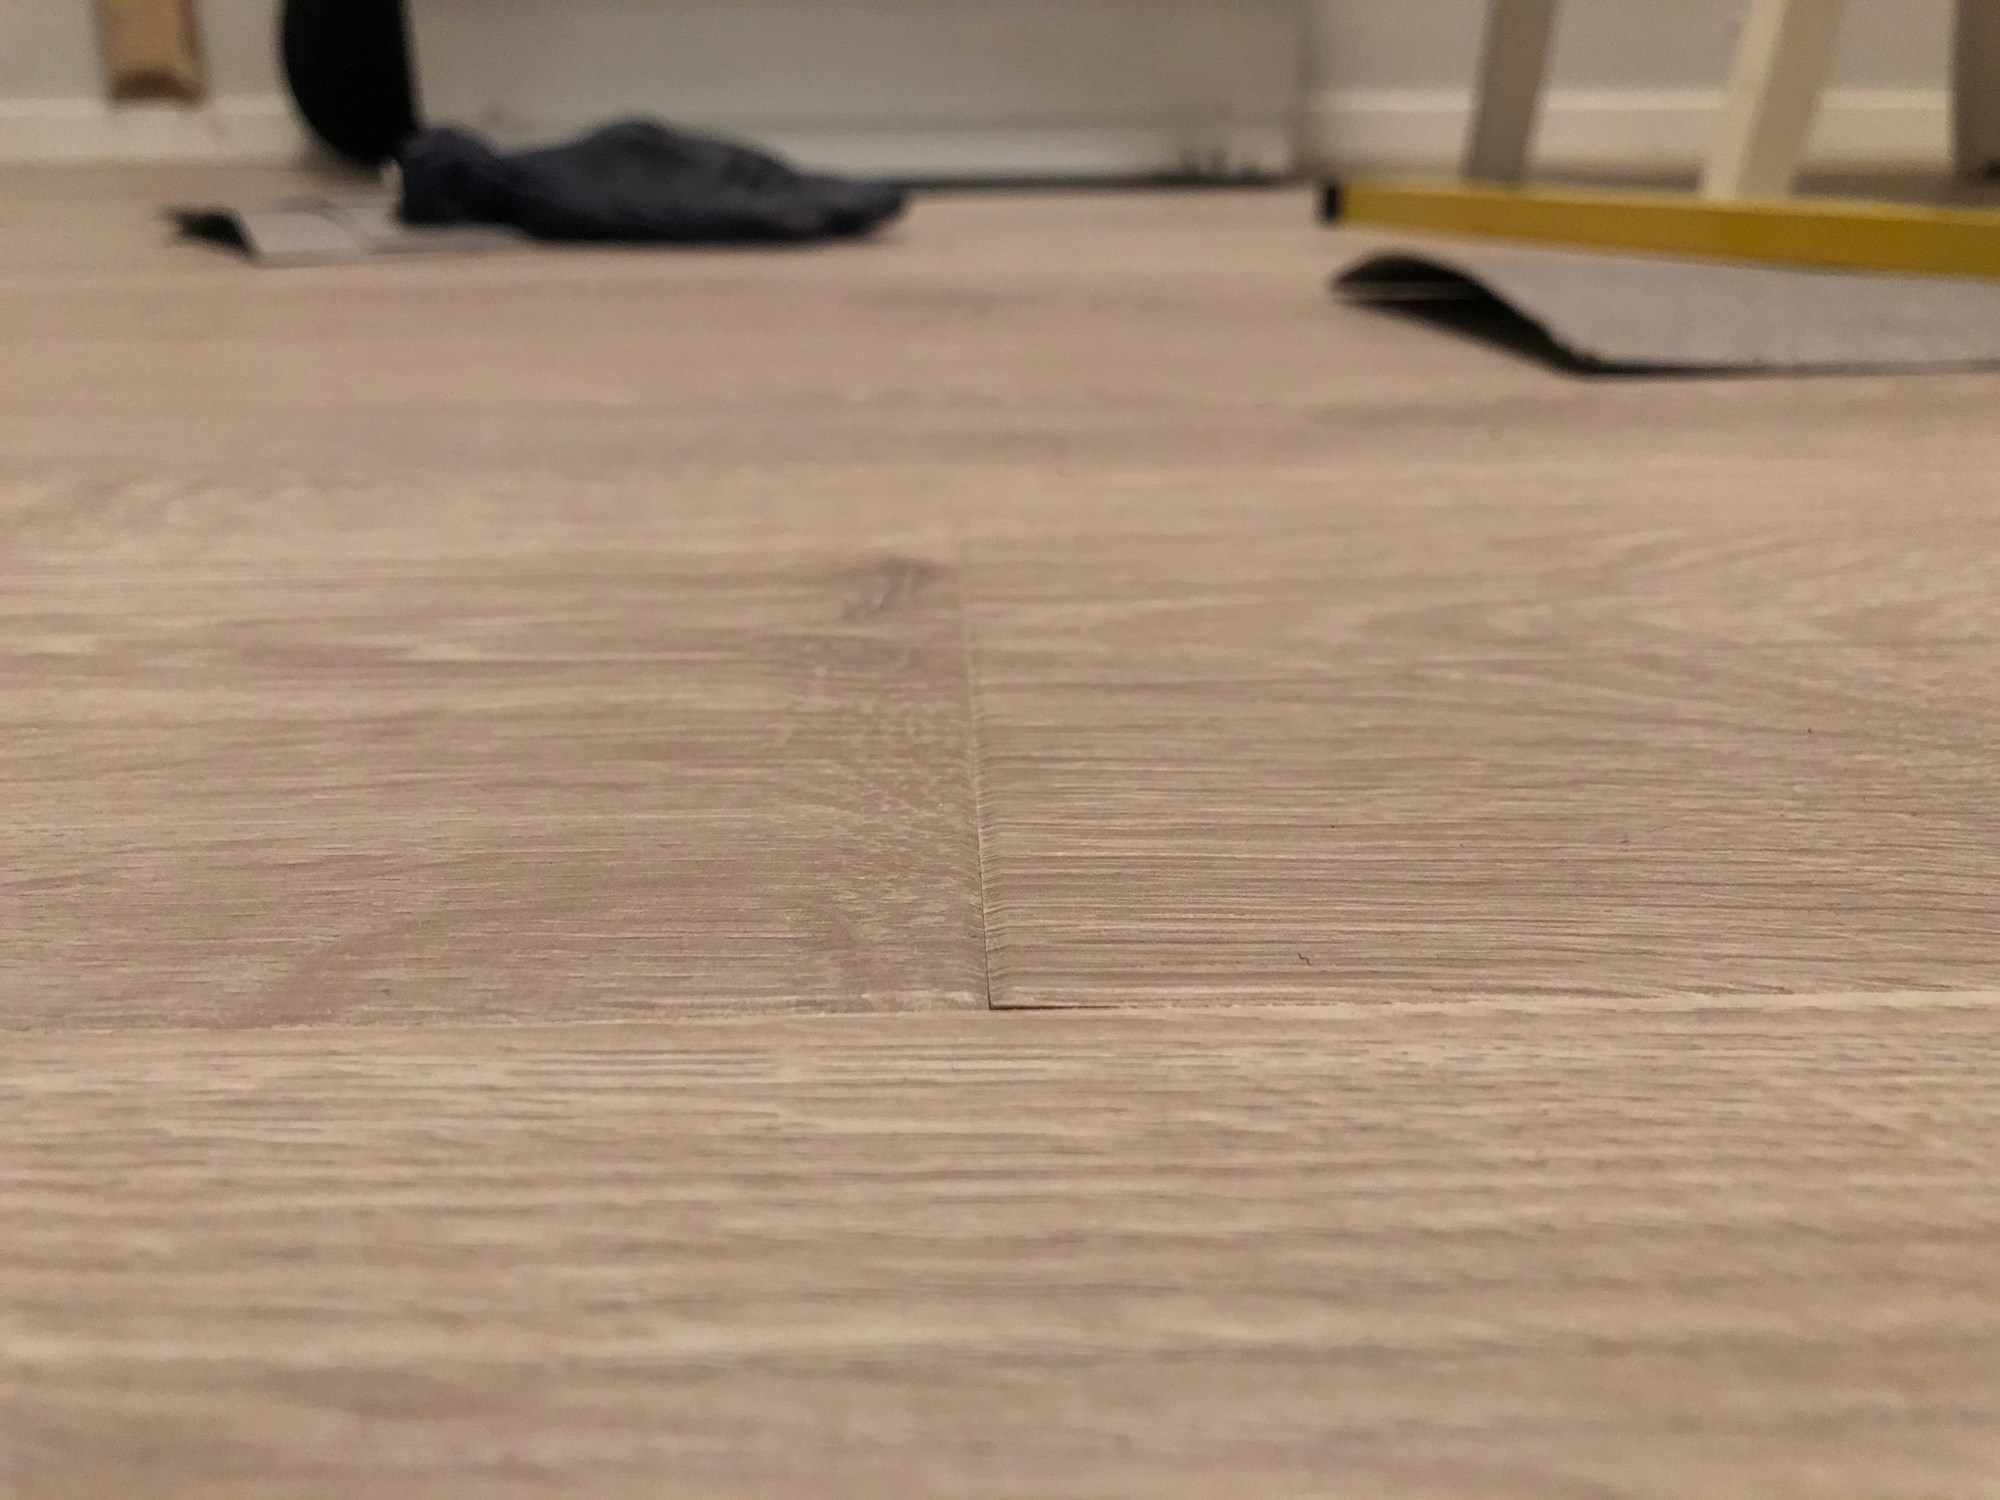 Skjevhet i gulv gir utslag under laminat legging - Hva kan gjøres? - IMG_2256.jpg - Logodesignerne